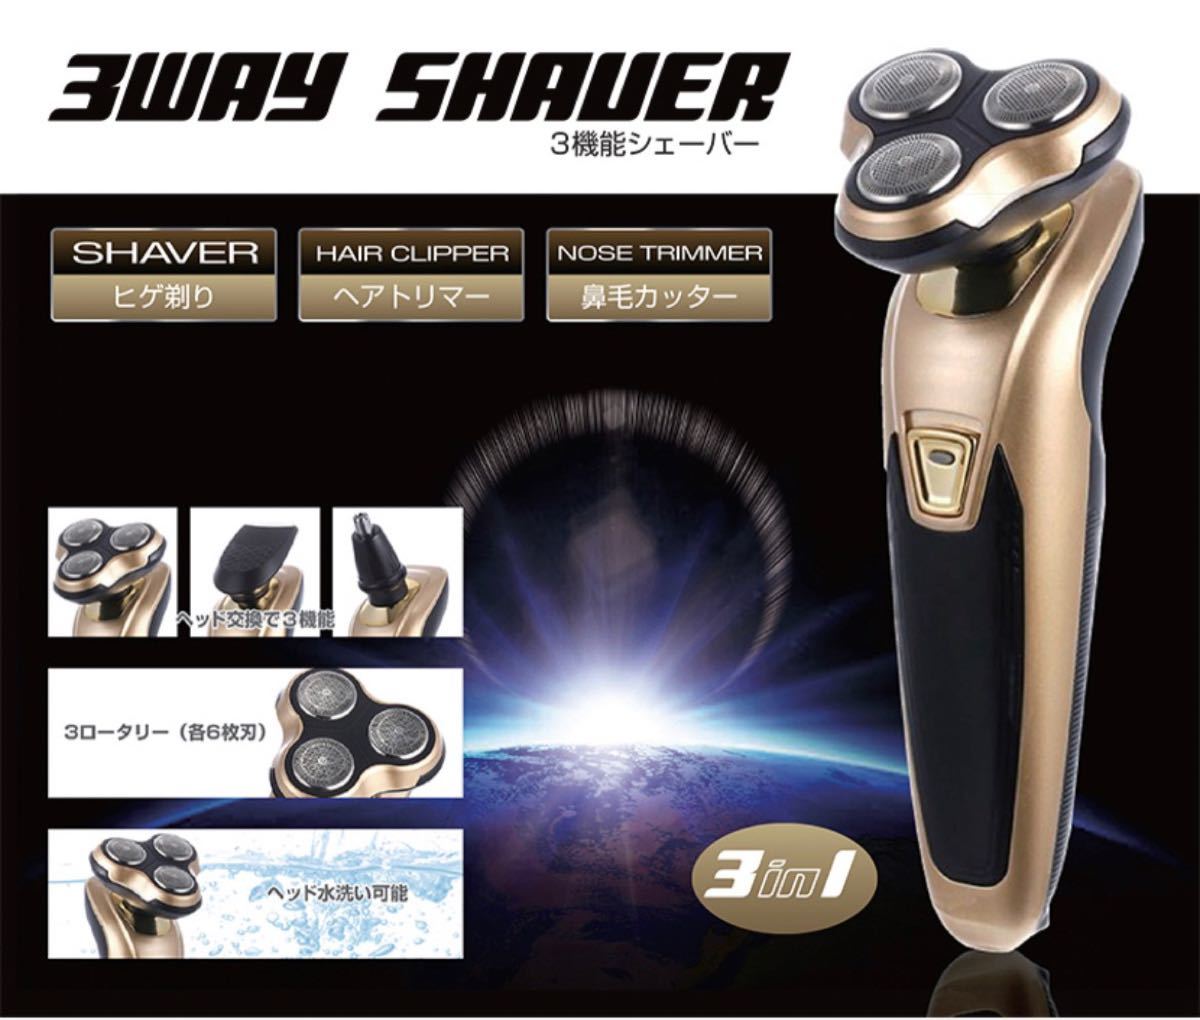 【新品・ゴールド】電気シェーバー 電気髭剃り 電動シェーバー 3way 6枚刃 水洗い可 メンズ 水洗い可能 軽量 プレゼント